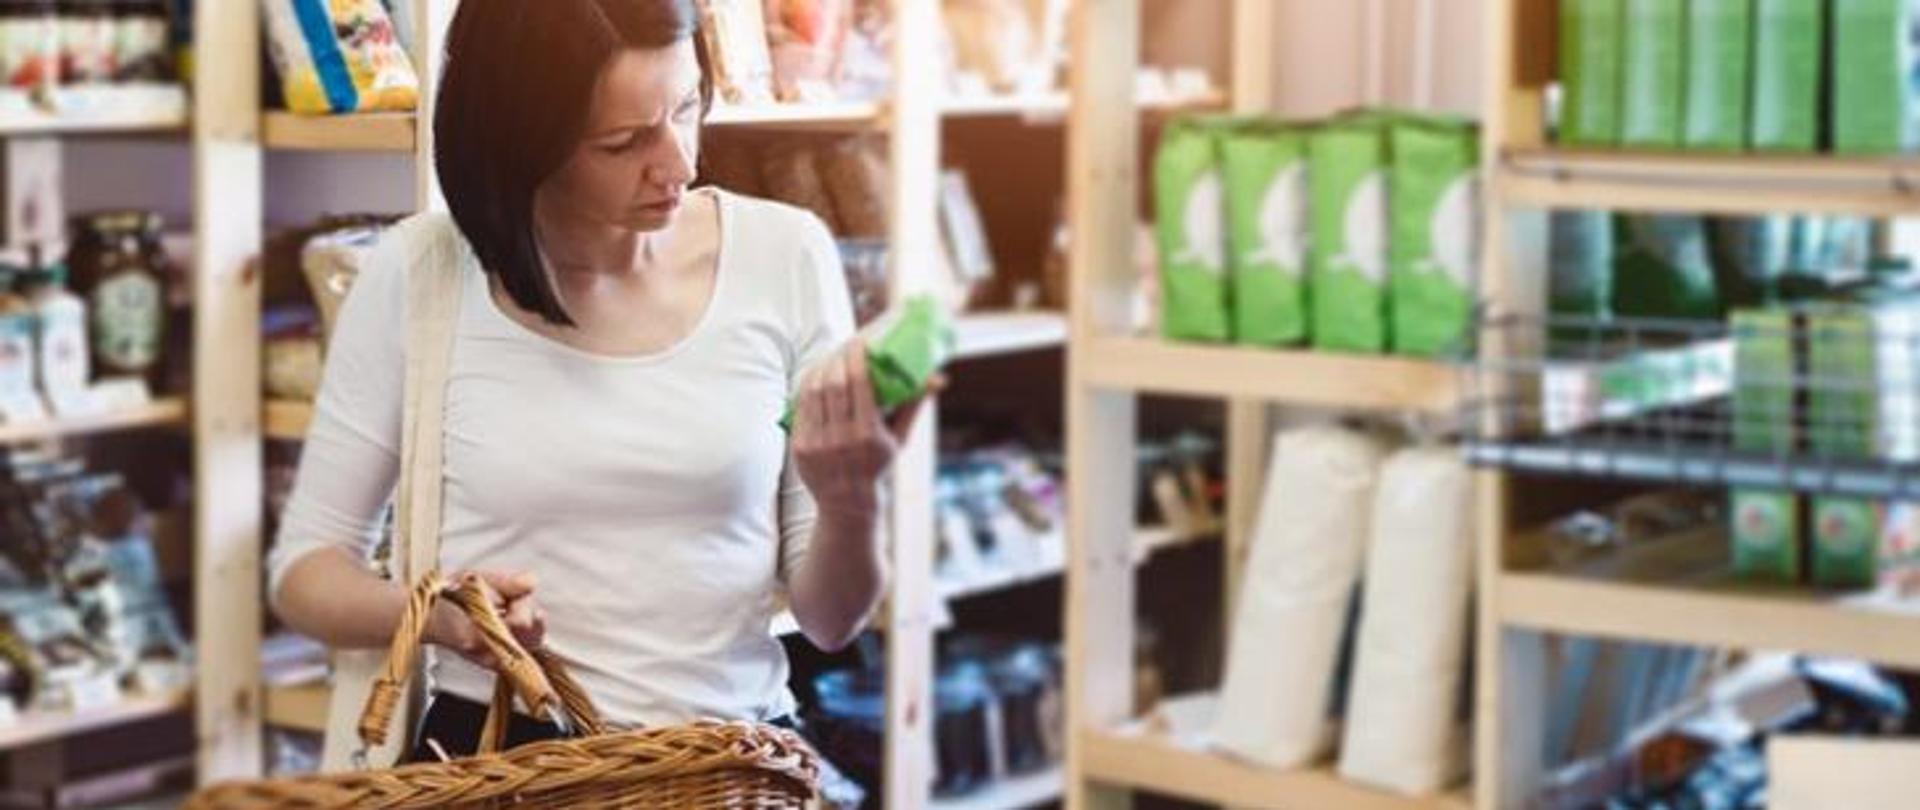 kobieta z koszykiem w ręku robi zakupy w sklepie. W ręku trzyma opakowanie i czyta opis produktu